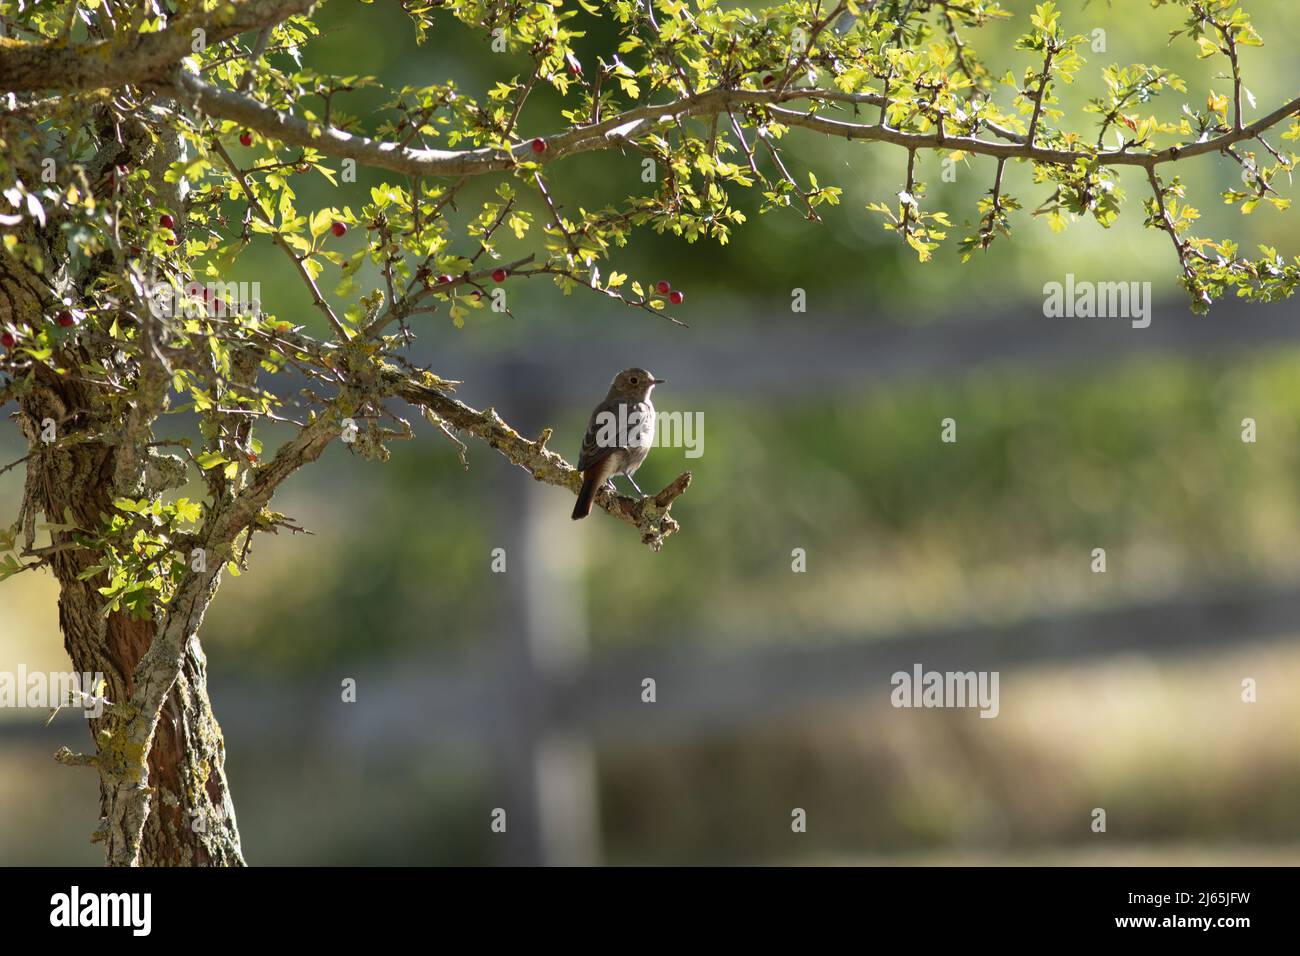 Un oiseau sur une branche dans un cadre de verdure Stock Photo